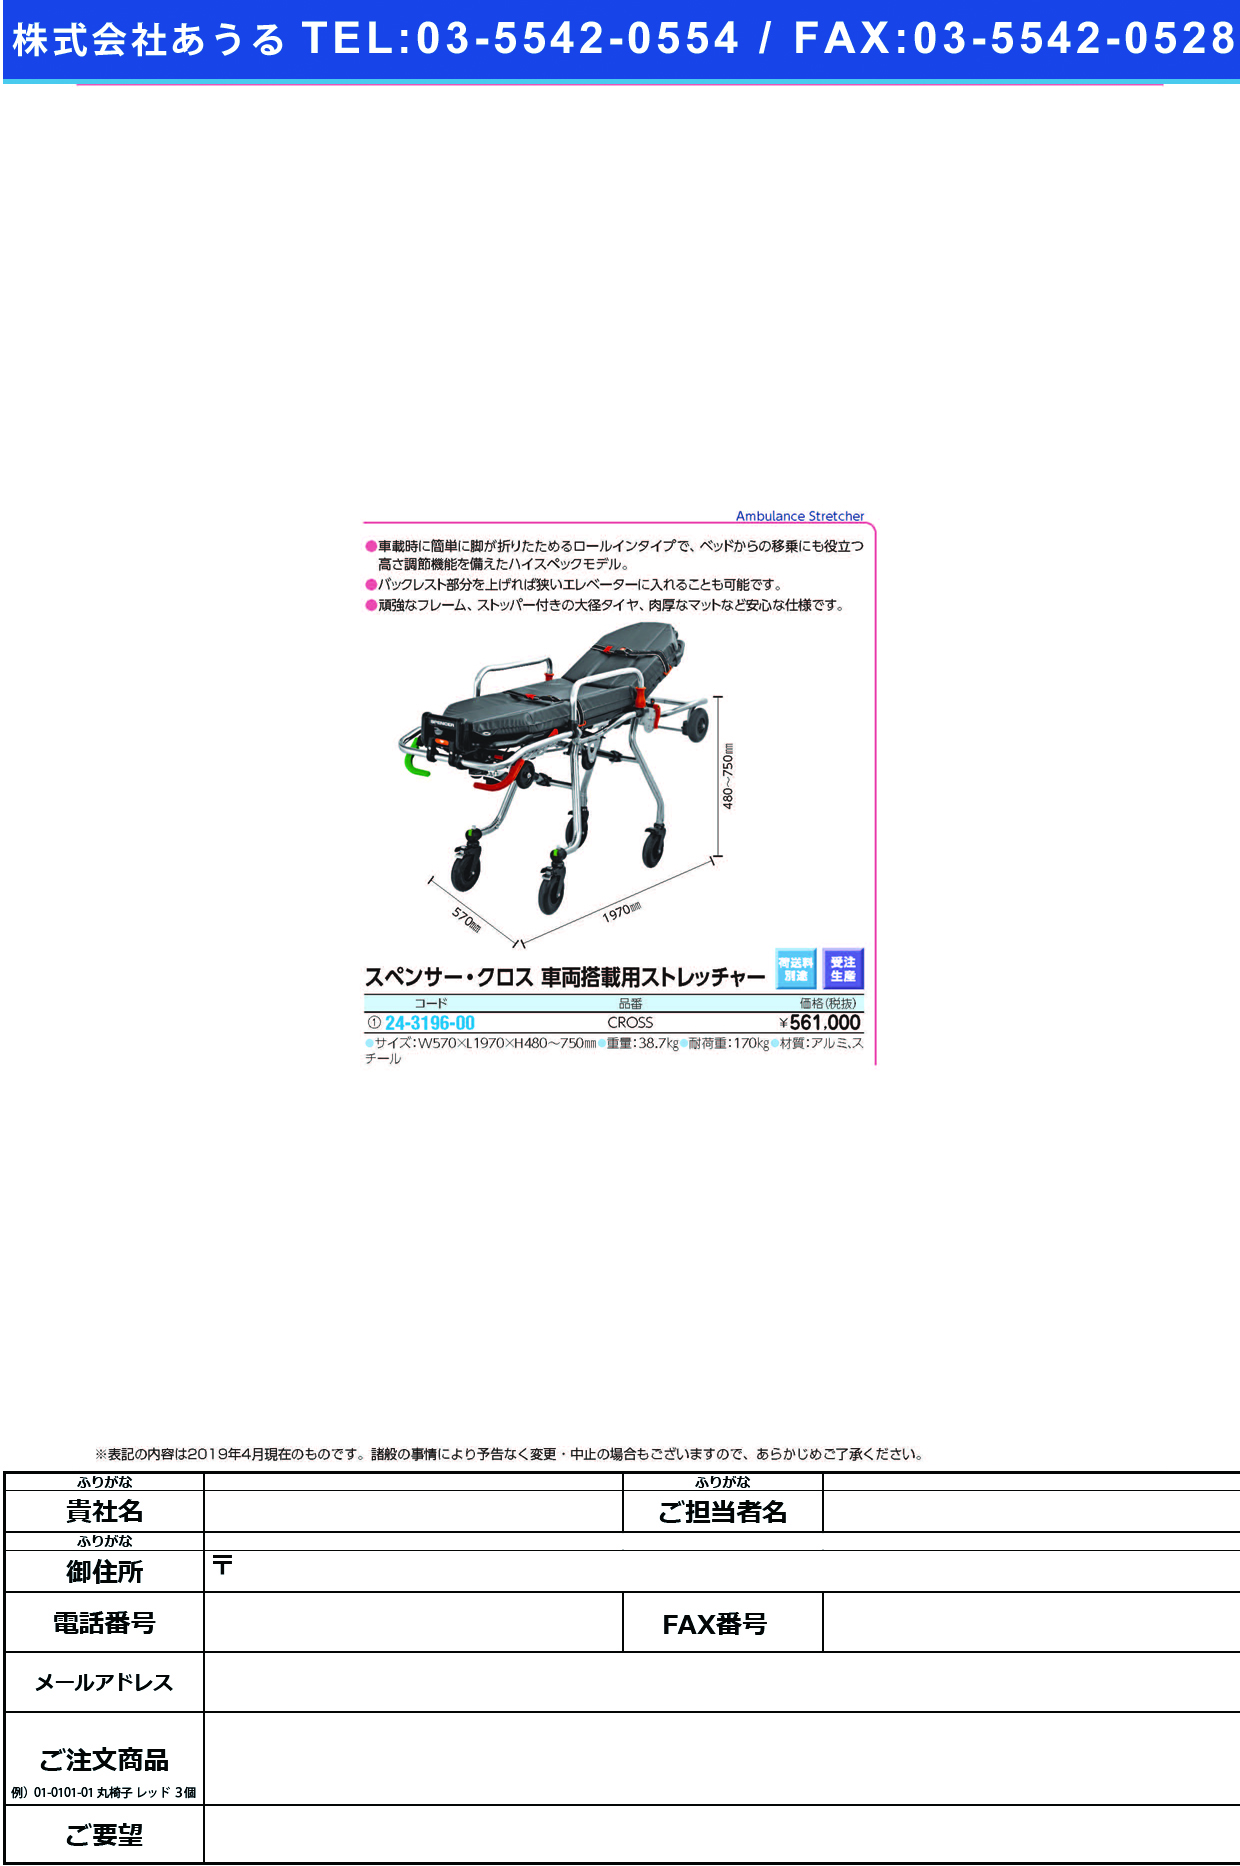 (24-3196-00)スペンサークロス車載用ストレッチャー CROSS ｽﾍﾟﾝｻｰｸﾛｽｼｬｻｲｽﾄﾚｯﾁｬｰ【1台単位】【2019年カタログ商品】